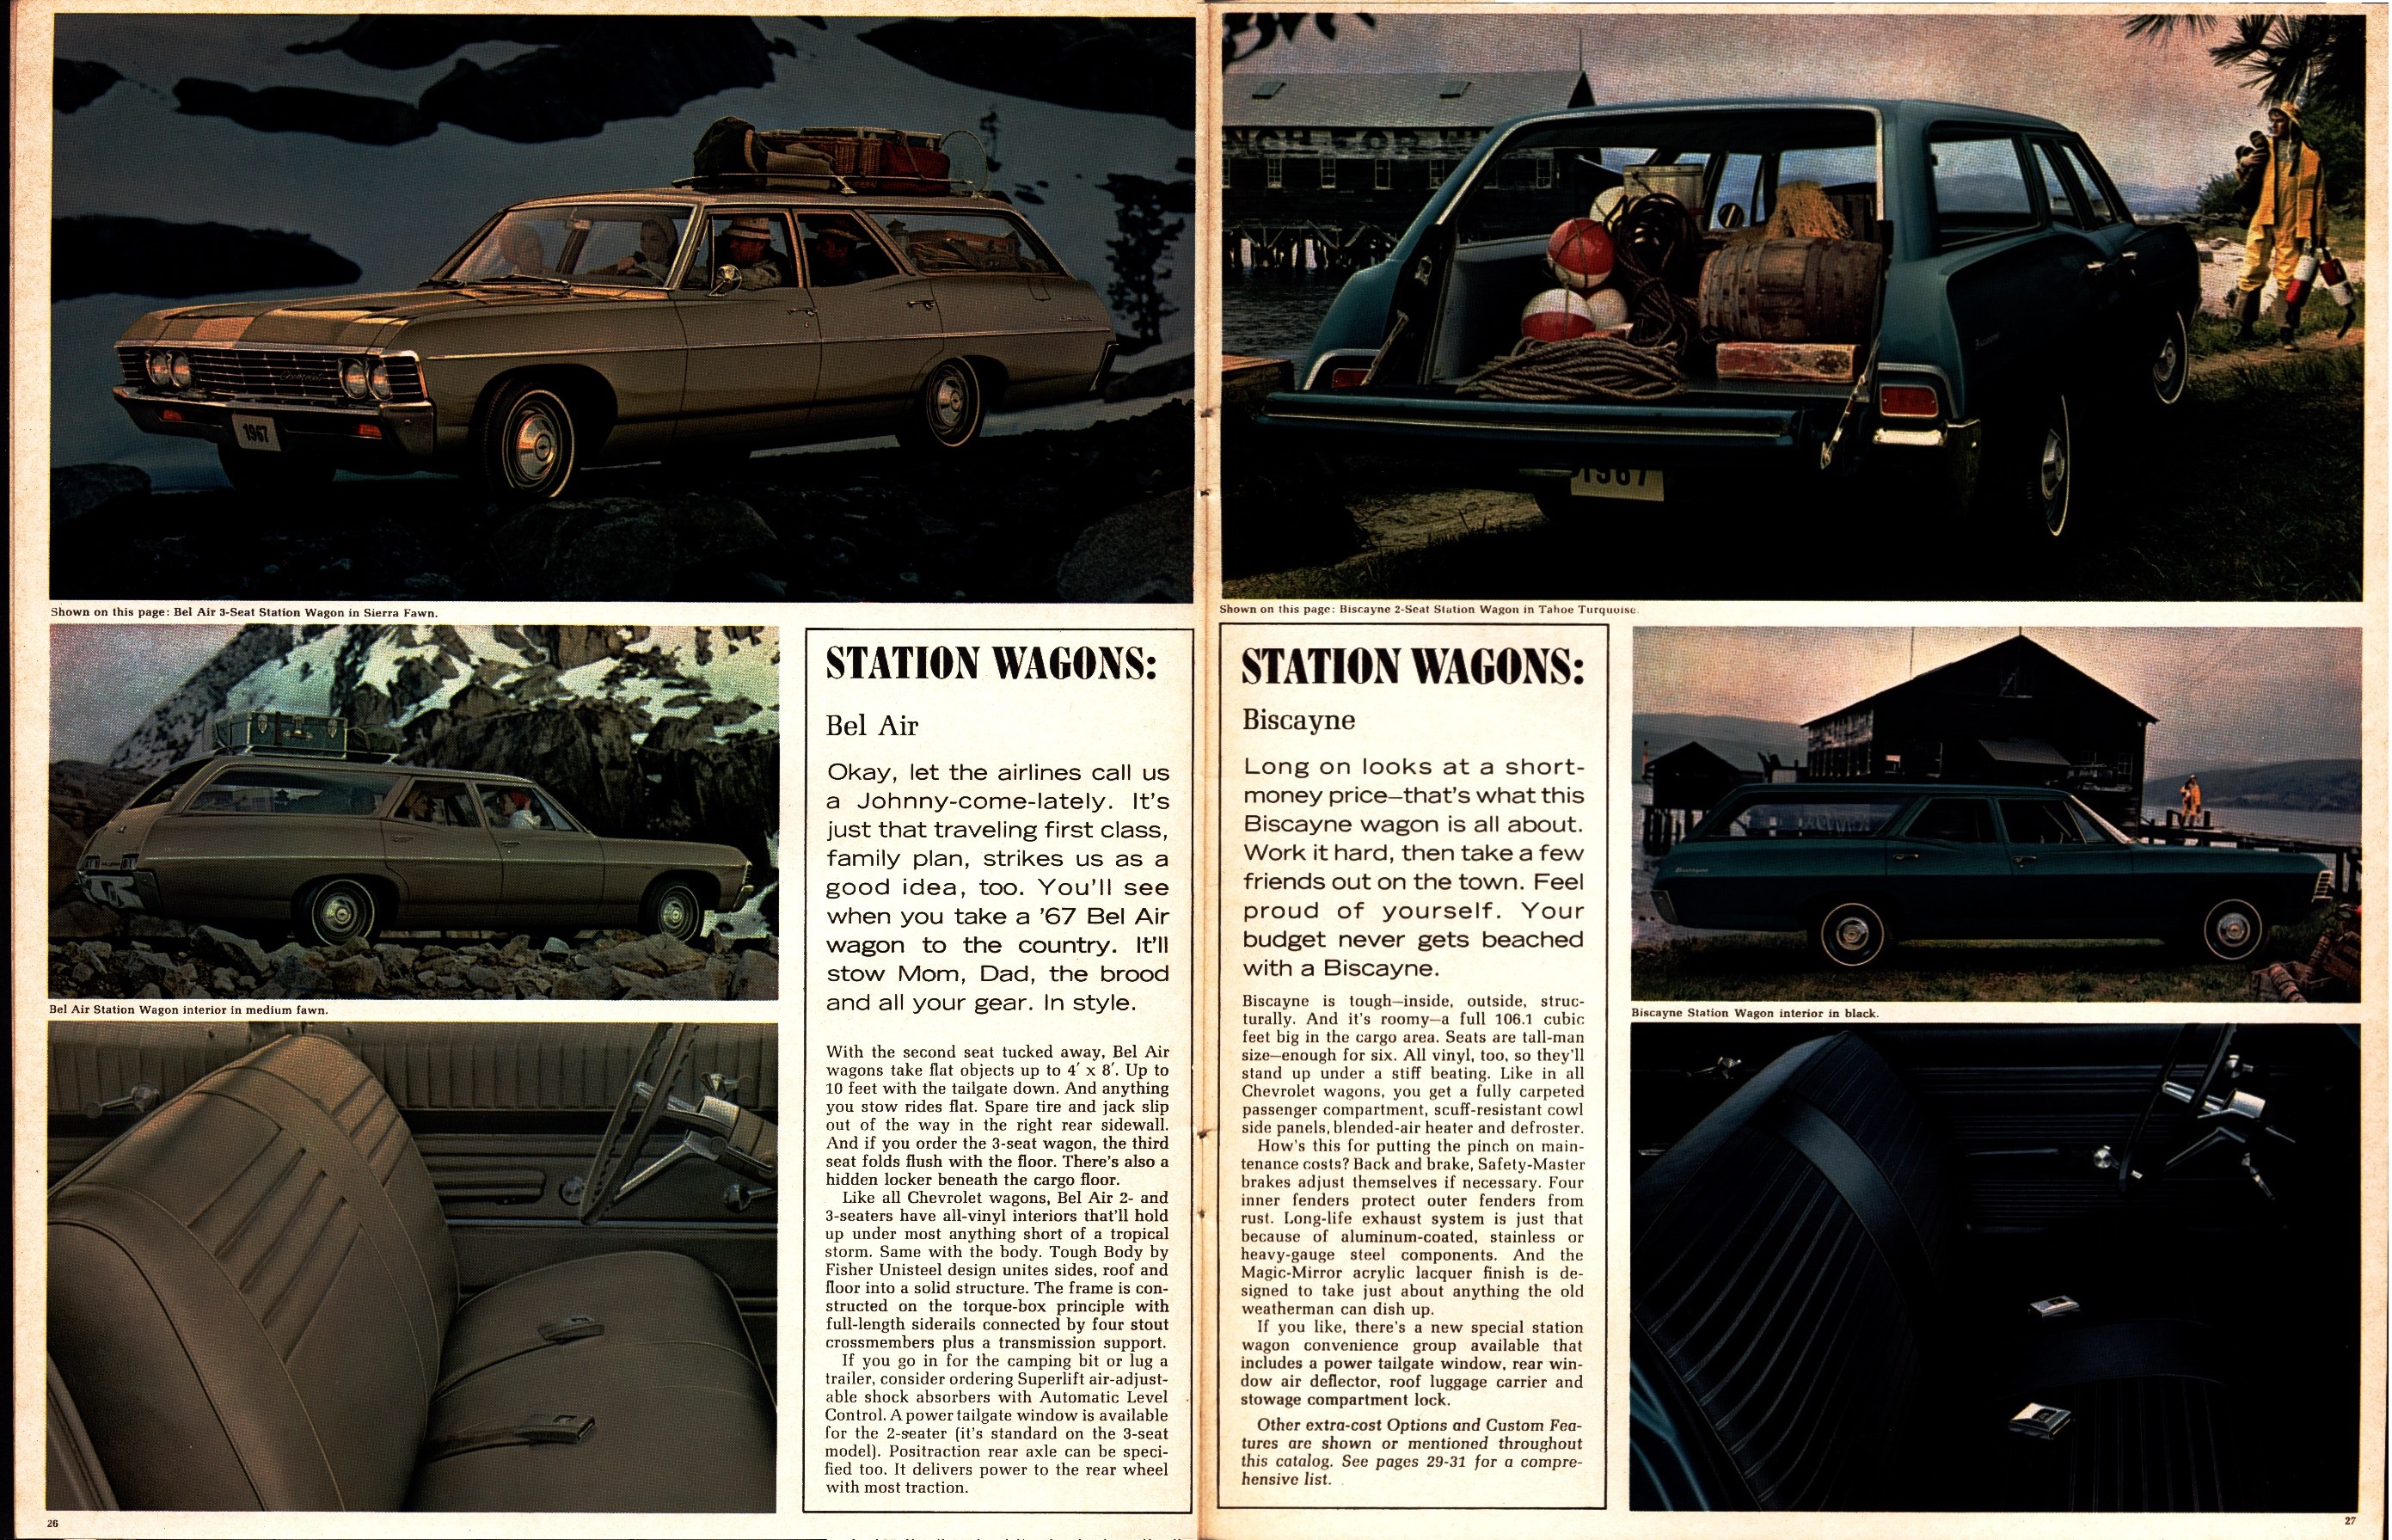 1967 Chevrolet Full Size Brochure (R-1) 26-27